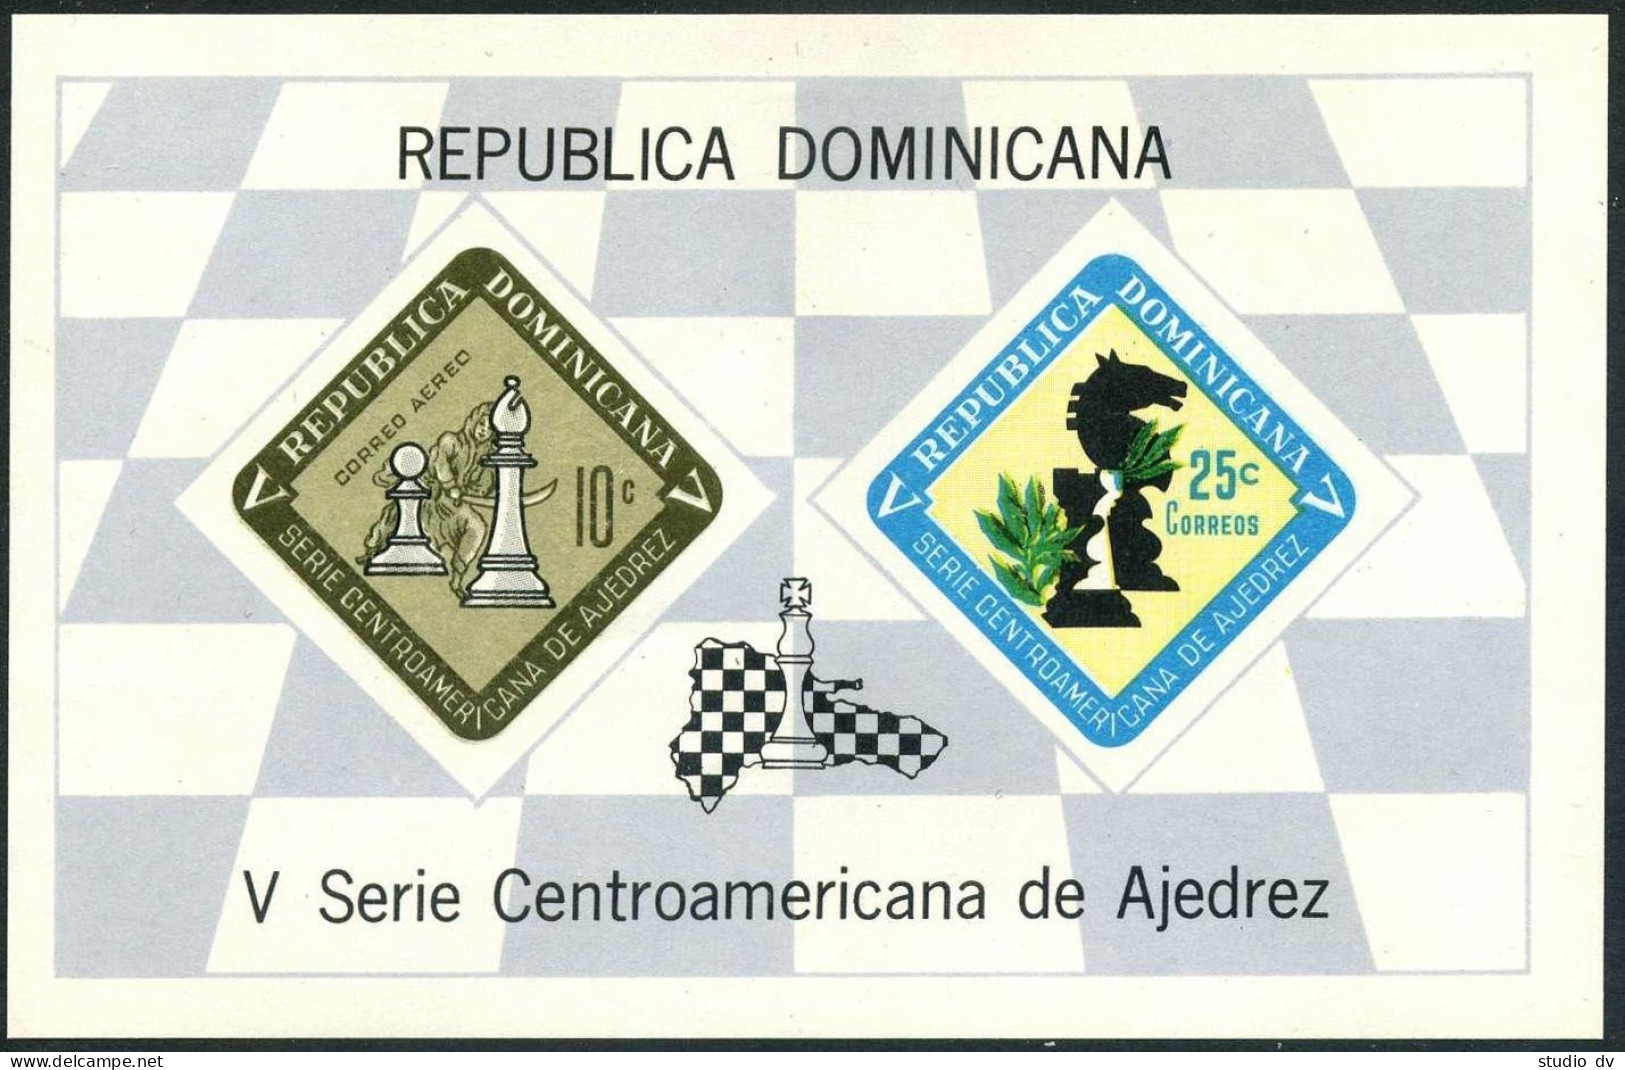 Dominican Rep C152a, MNH. Mi Bl.36. Central American Chess Championships, 1967. - Dominikanische Rep.